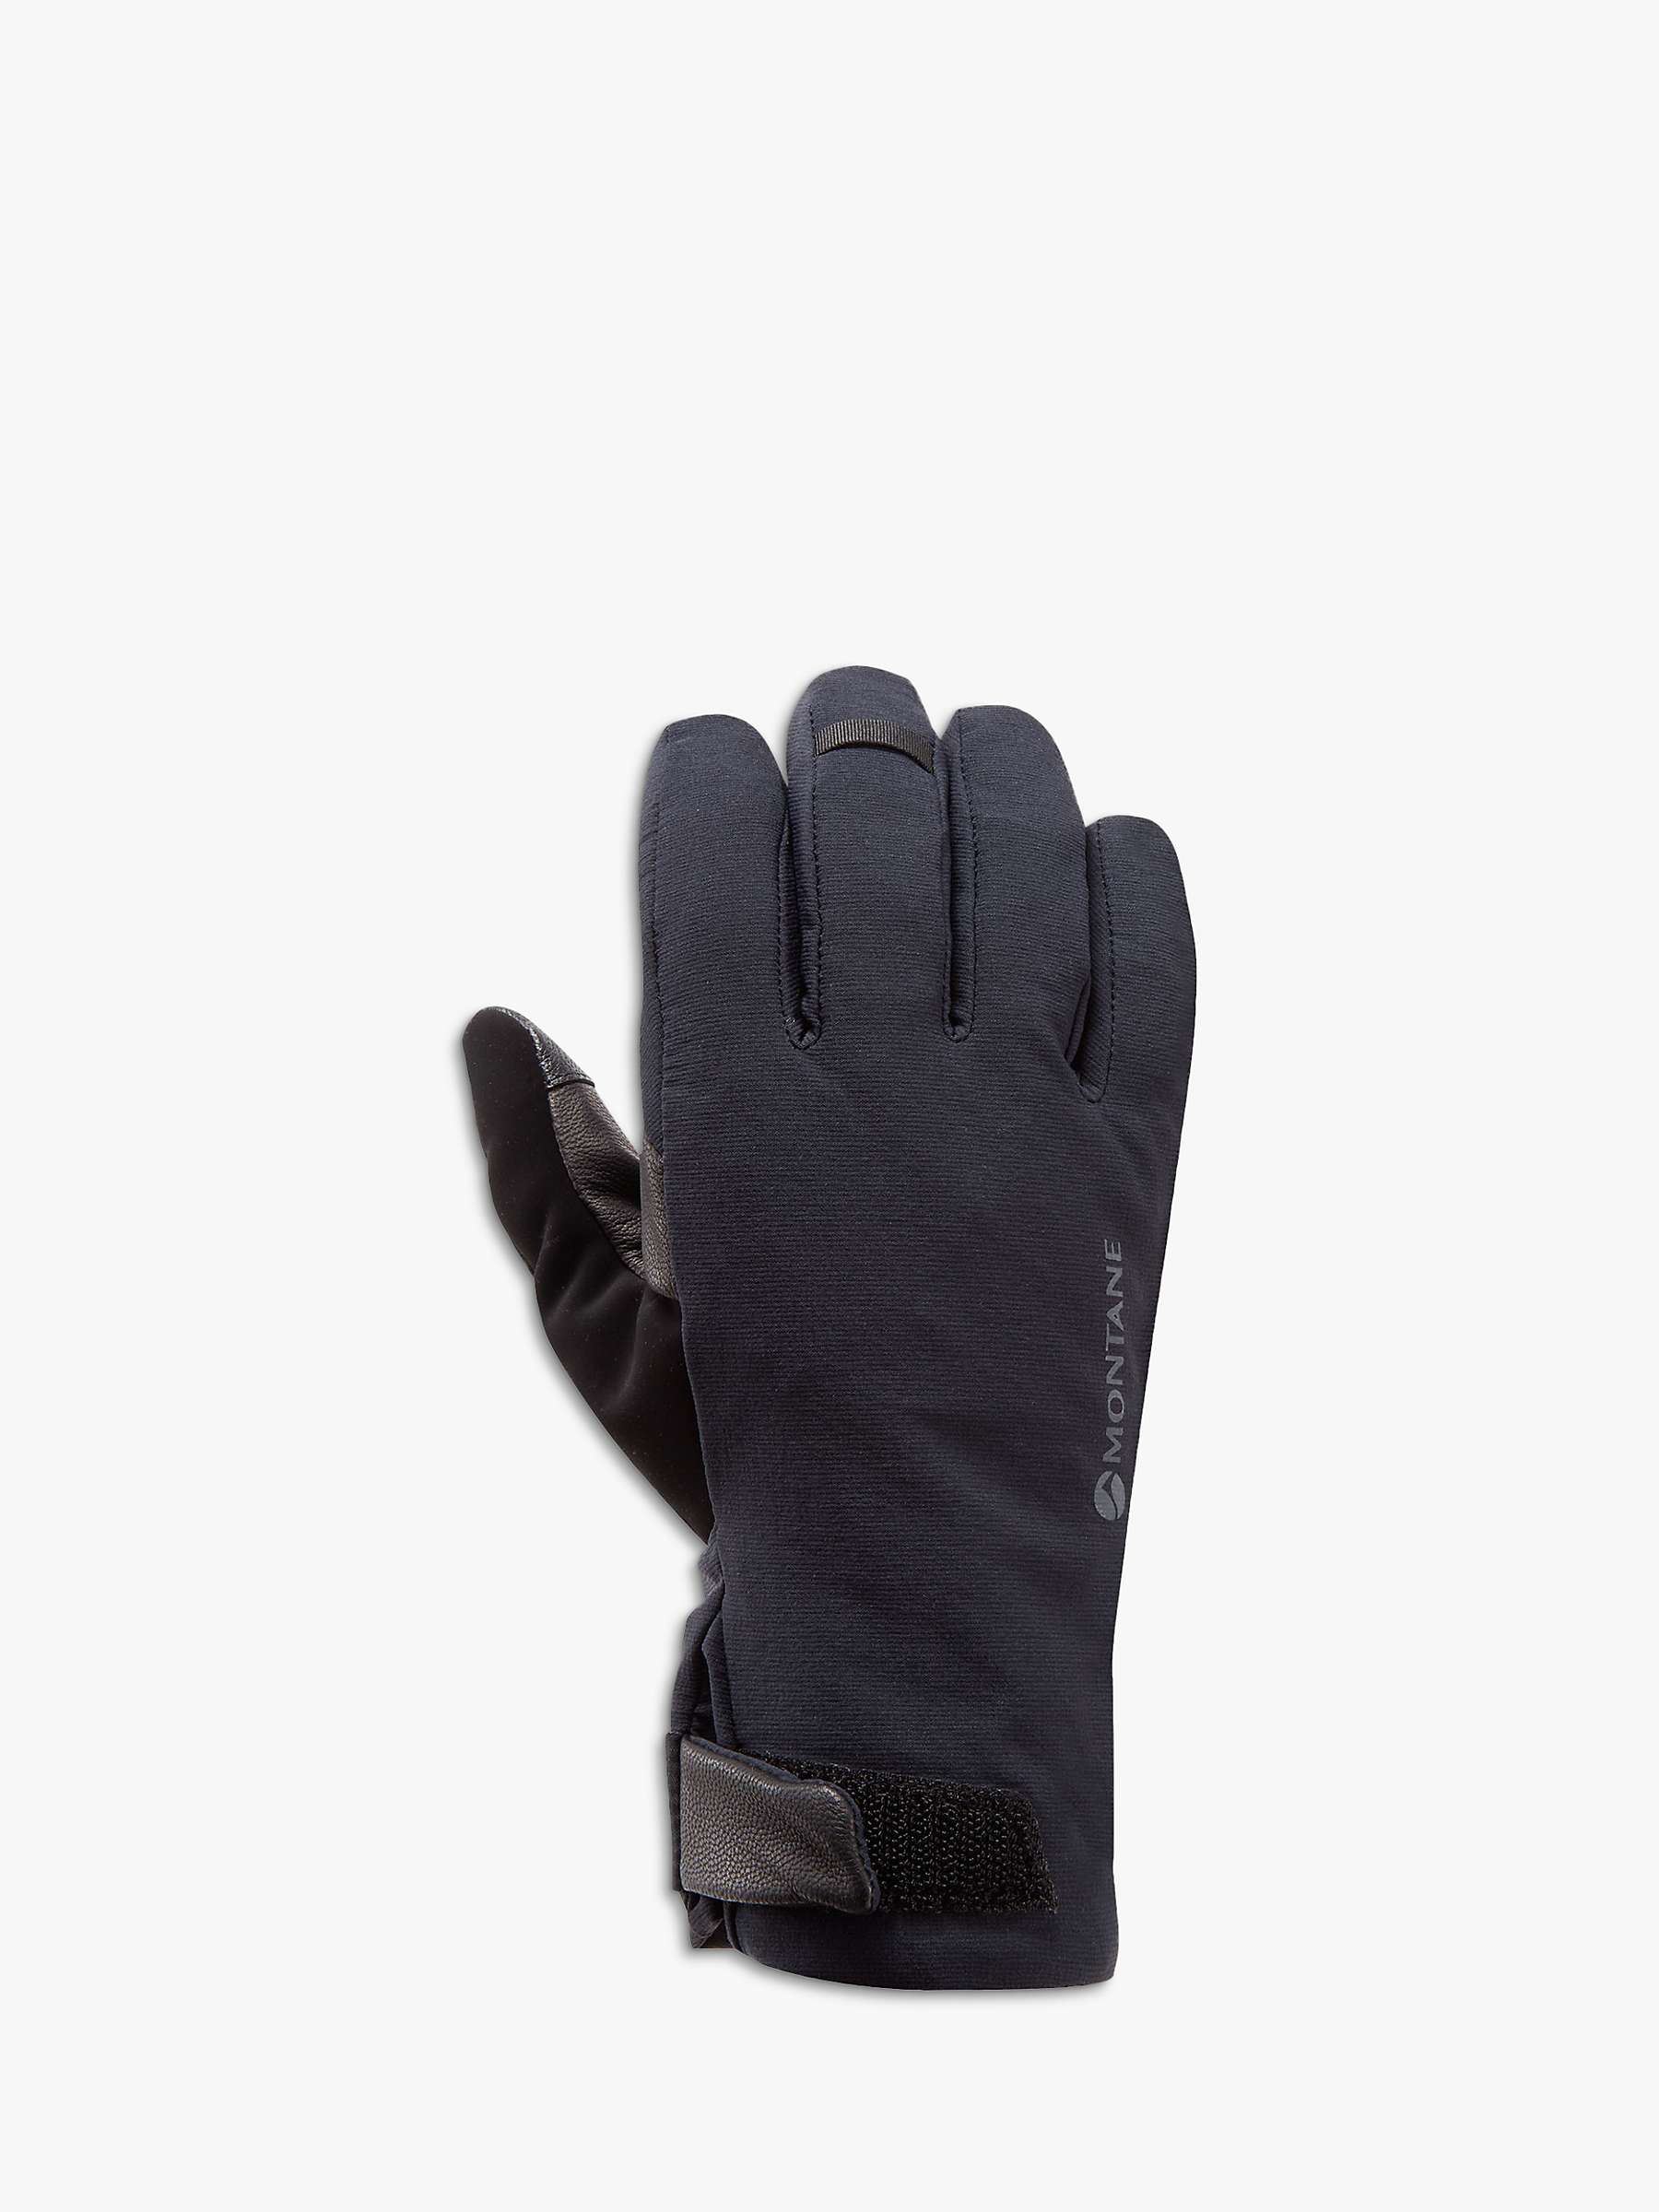 Buy Montane Men's Duality Waterproof Gloves, Black Online at johnlewis.com